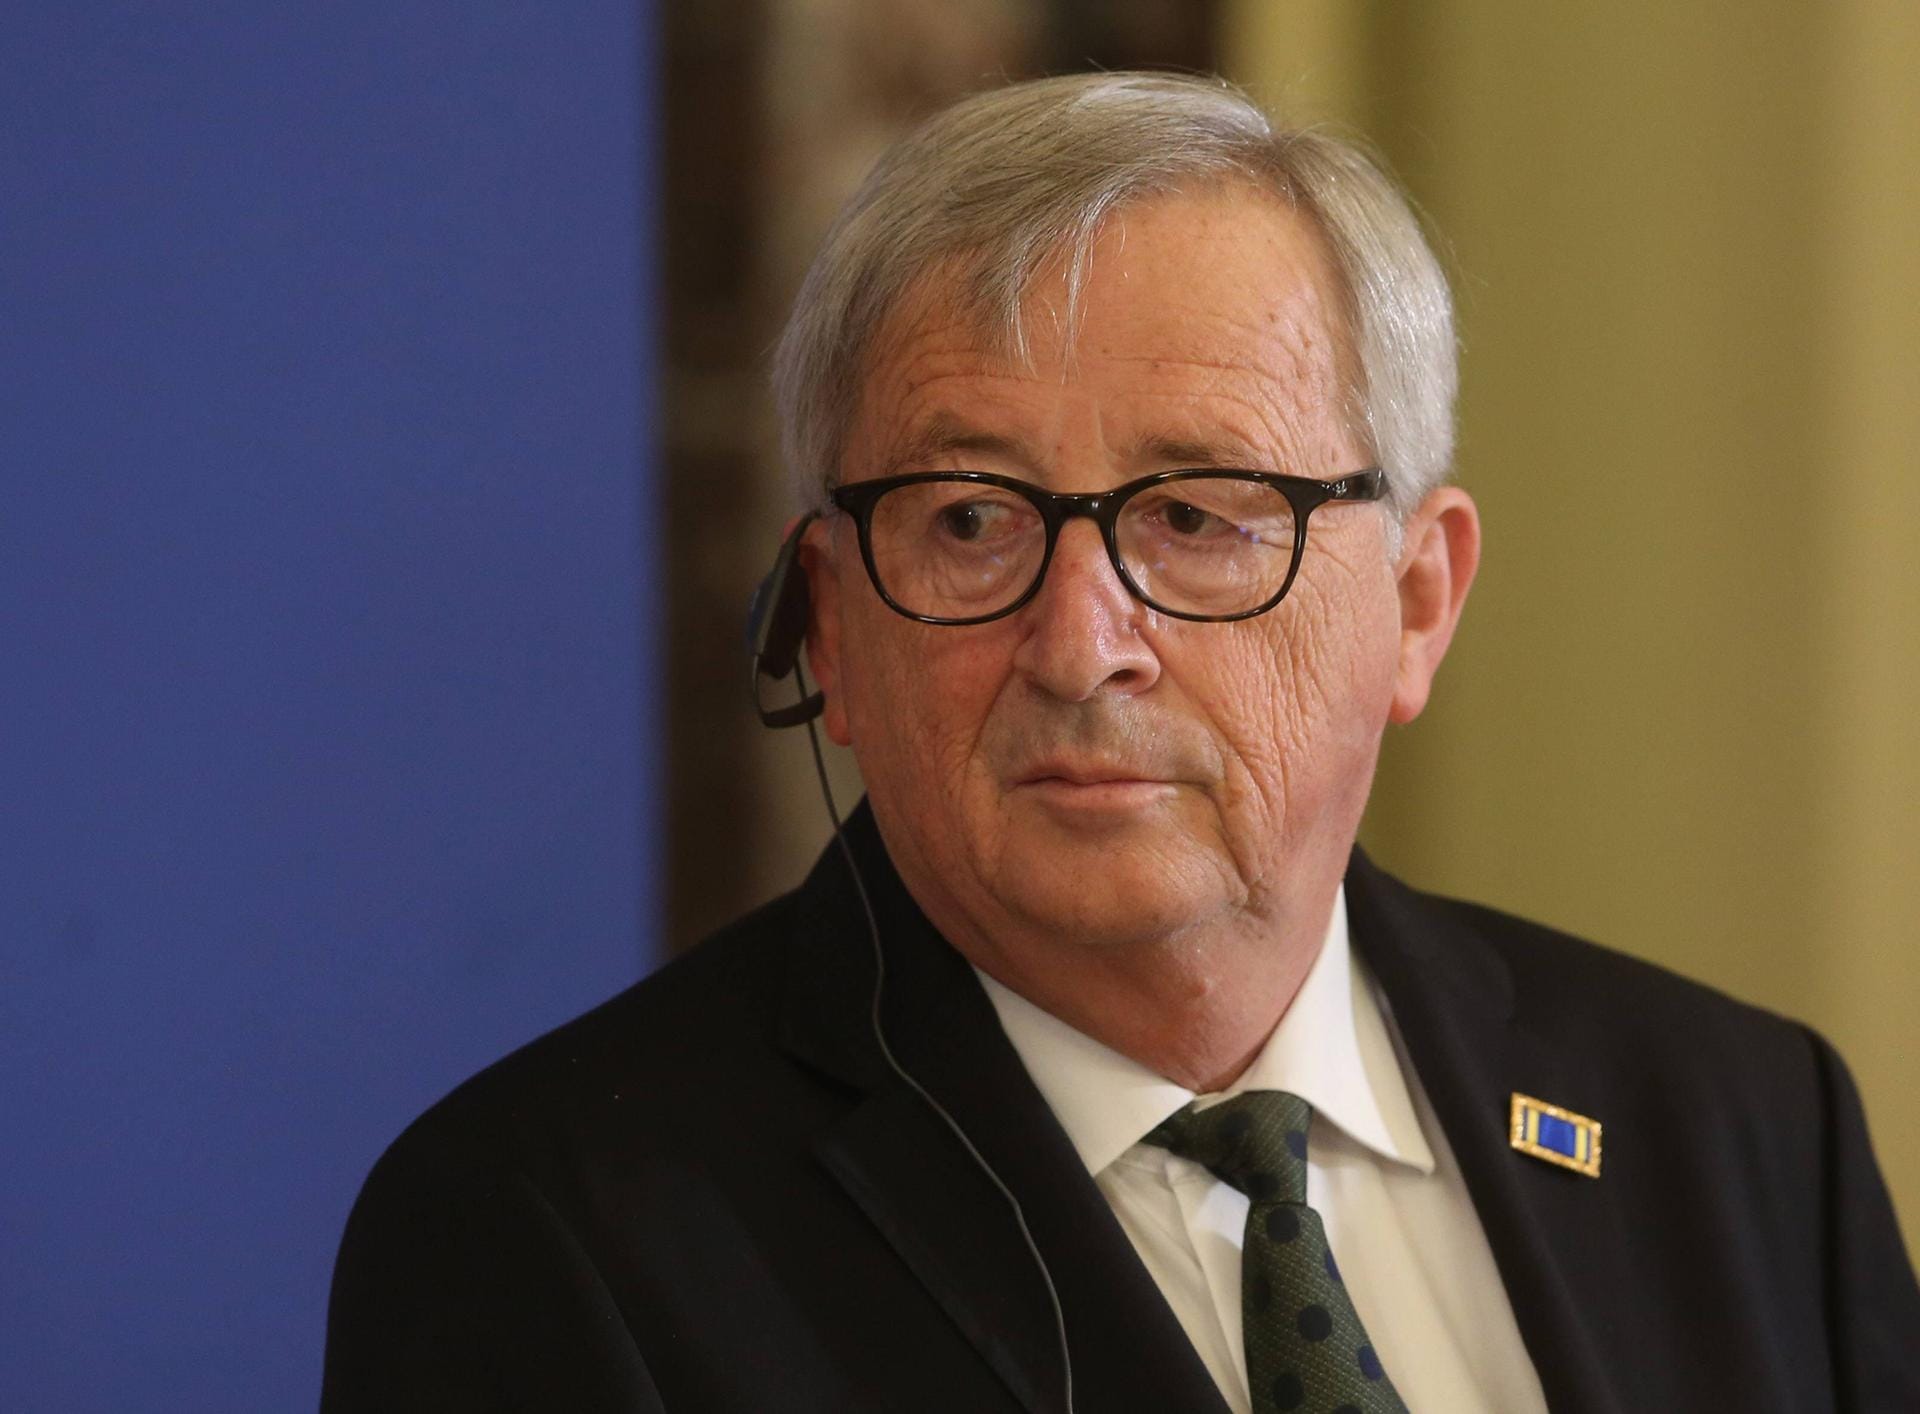 Jean-Claude Juncker gratulierte von der Leyen: "Dieser Job ist eine riesige Aufgabe und eine Herausforderung. Ich bin sicher, dass Sie eine großartige Präsidentin werden. Willkommen zu Hause!"